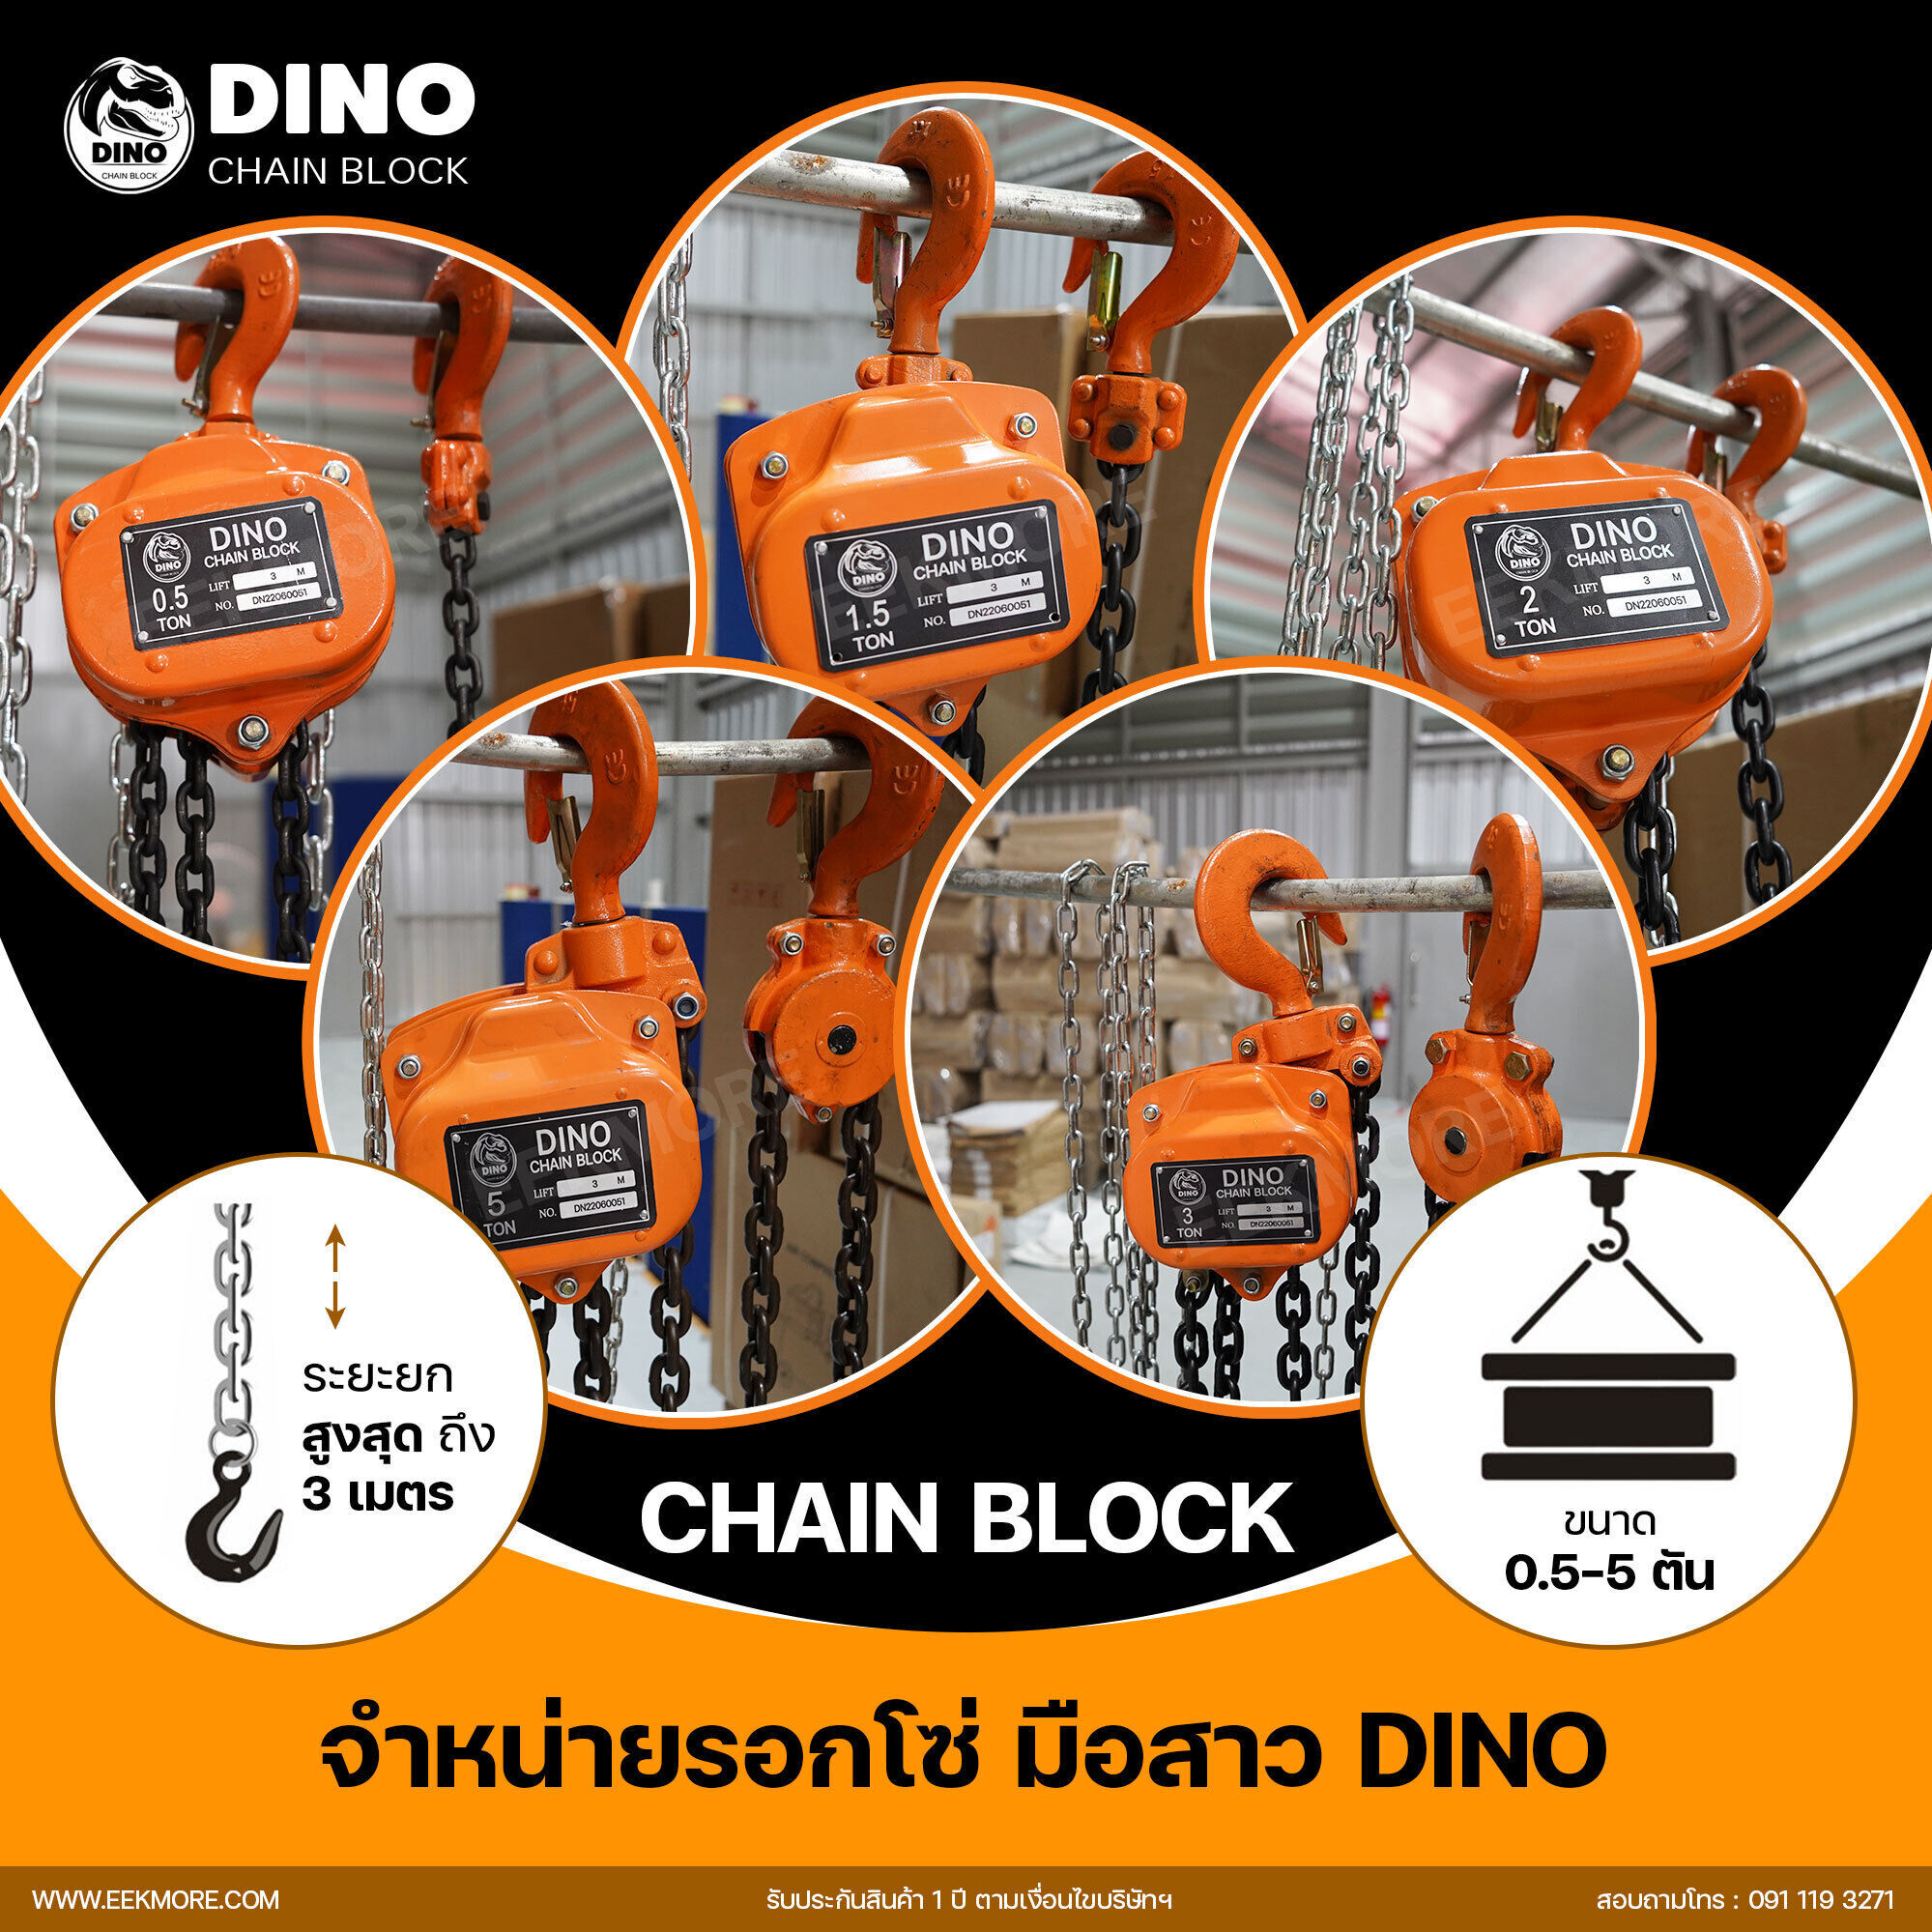 รอกโซ่มือสาว DINO Chain Block รอกโซ่มือสาวคุณภาพแบรนด์ไทย มารตฐานญี่ปุ่น ระบบเบรกประสิทธิภาพสูงและความปลอดภัยสูง รับประกันสินค้า 1 ปี ตามเงื่อนไขบริษัทฯ